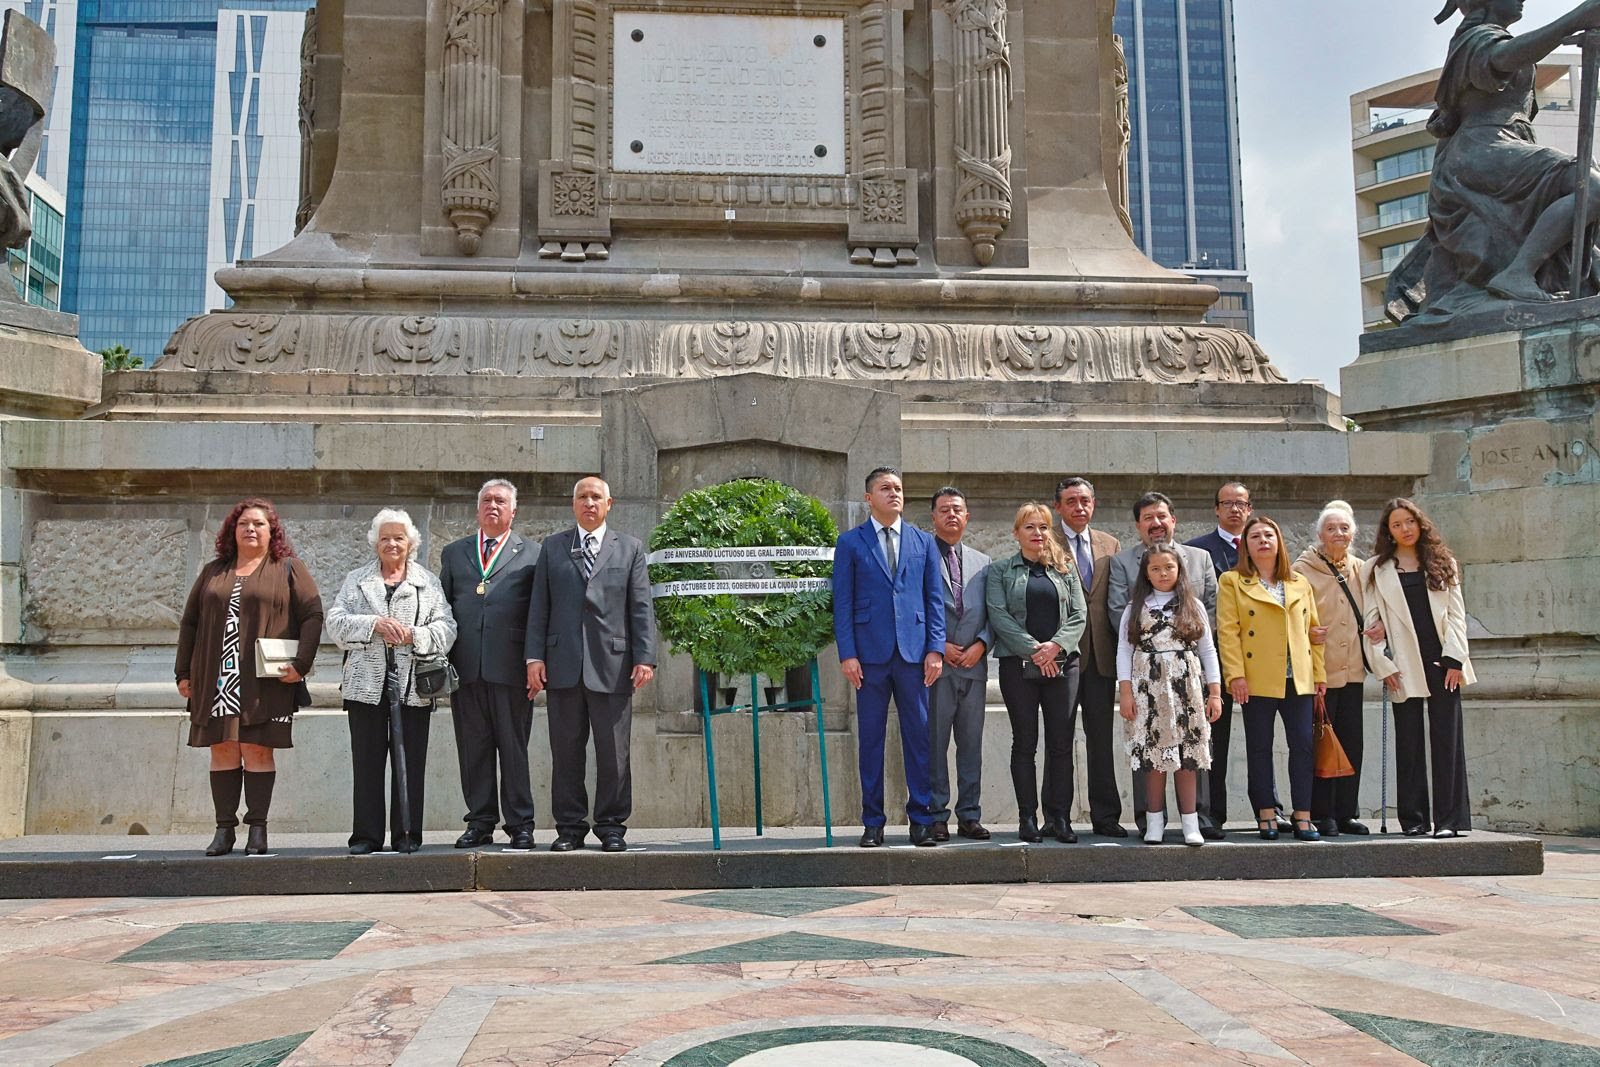 La Ciudad de México conmemora el 206 aniversario luctuoso del General Pedro Moreno